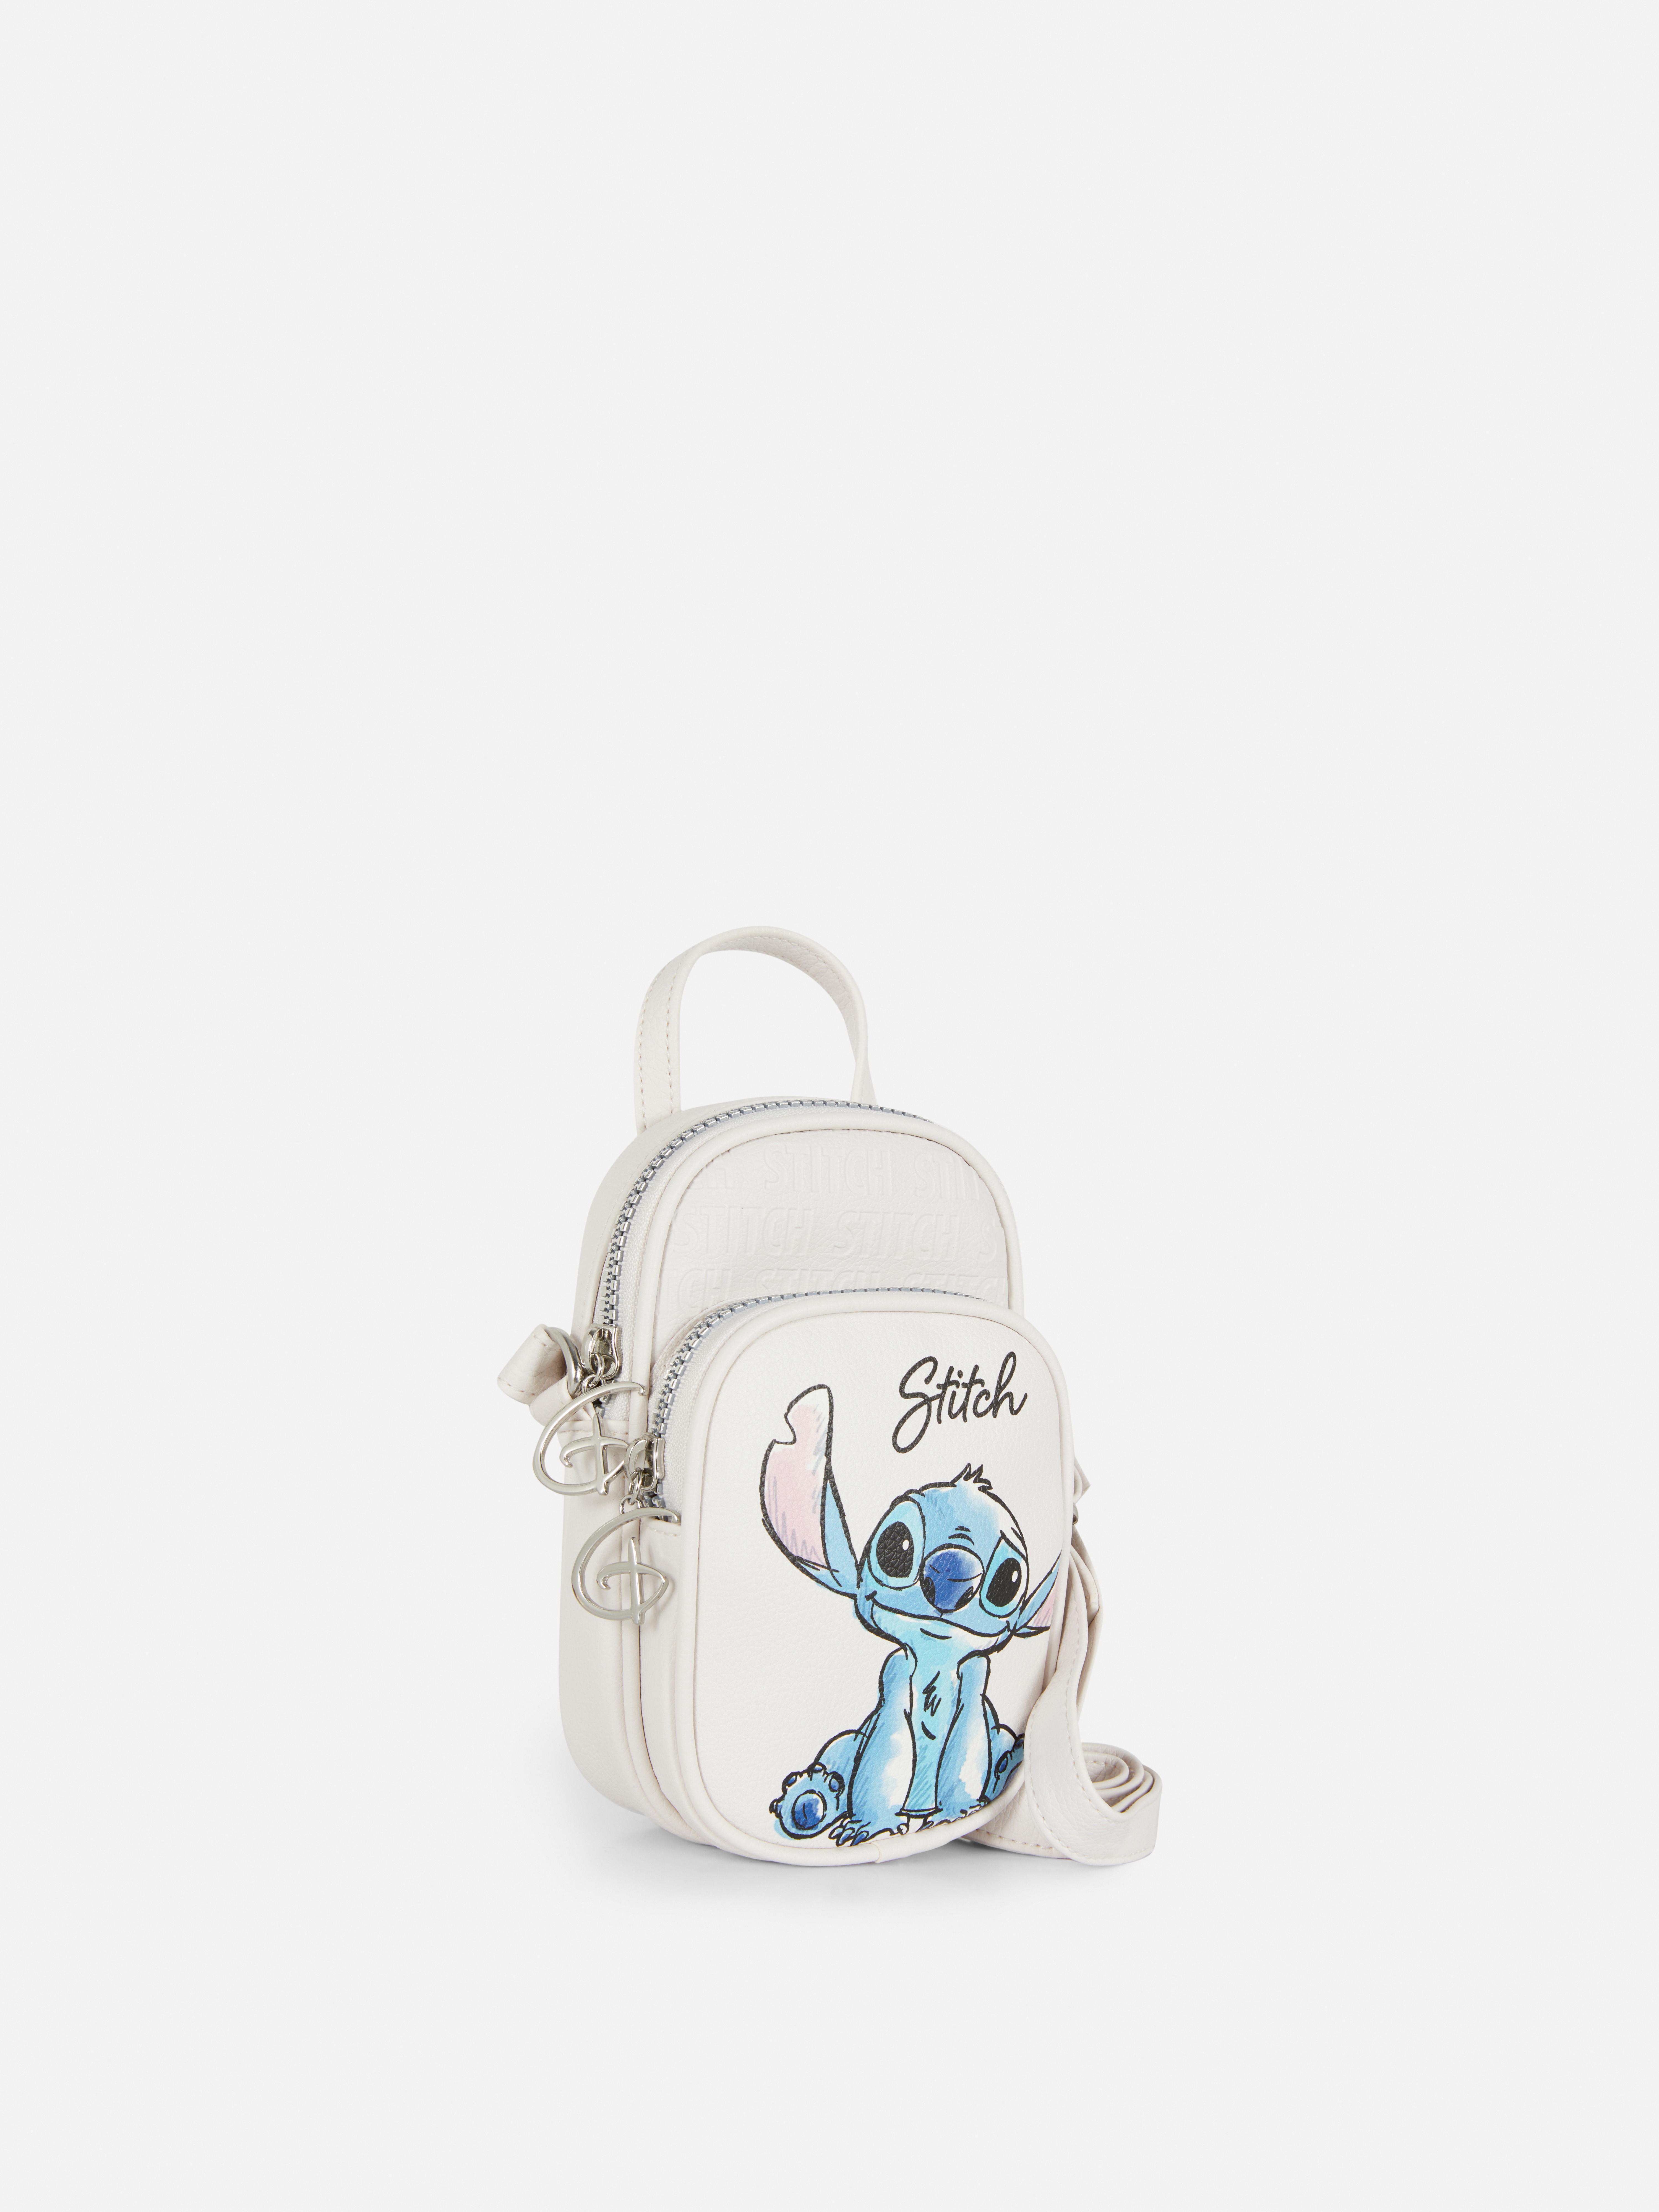 Borsa portacellulare Lilo & Stitch Disney